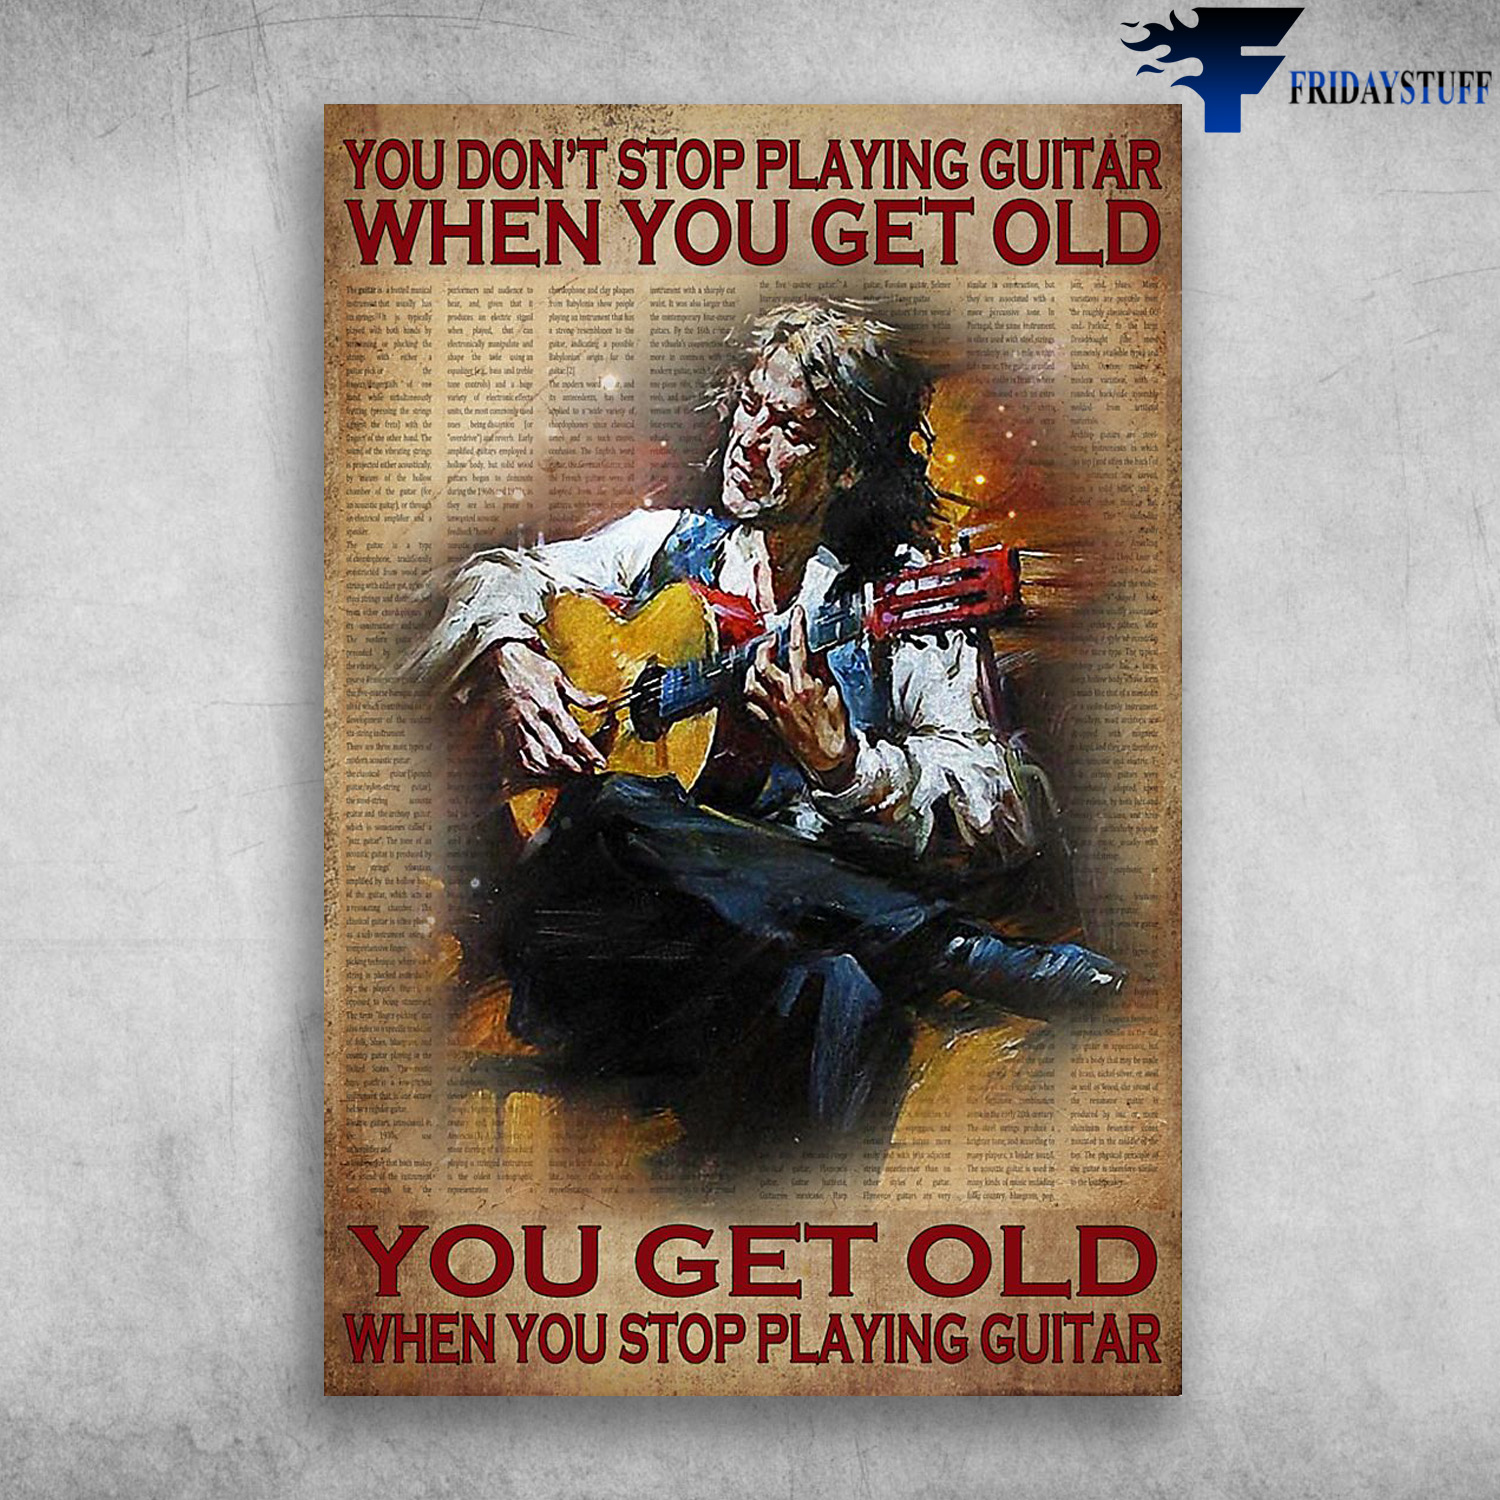 Guitar Man - You Don't Stop Playing Guitar When You Get Old, You Get Old When You Stop Playing Guitar